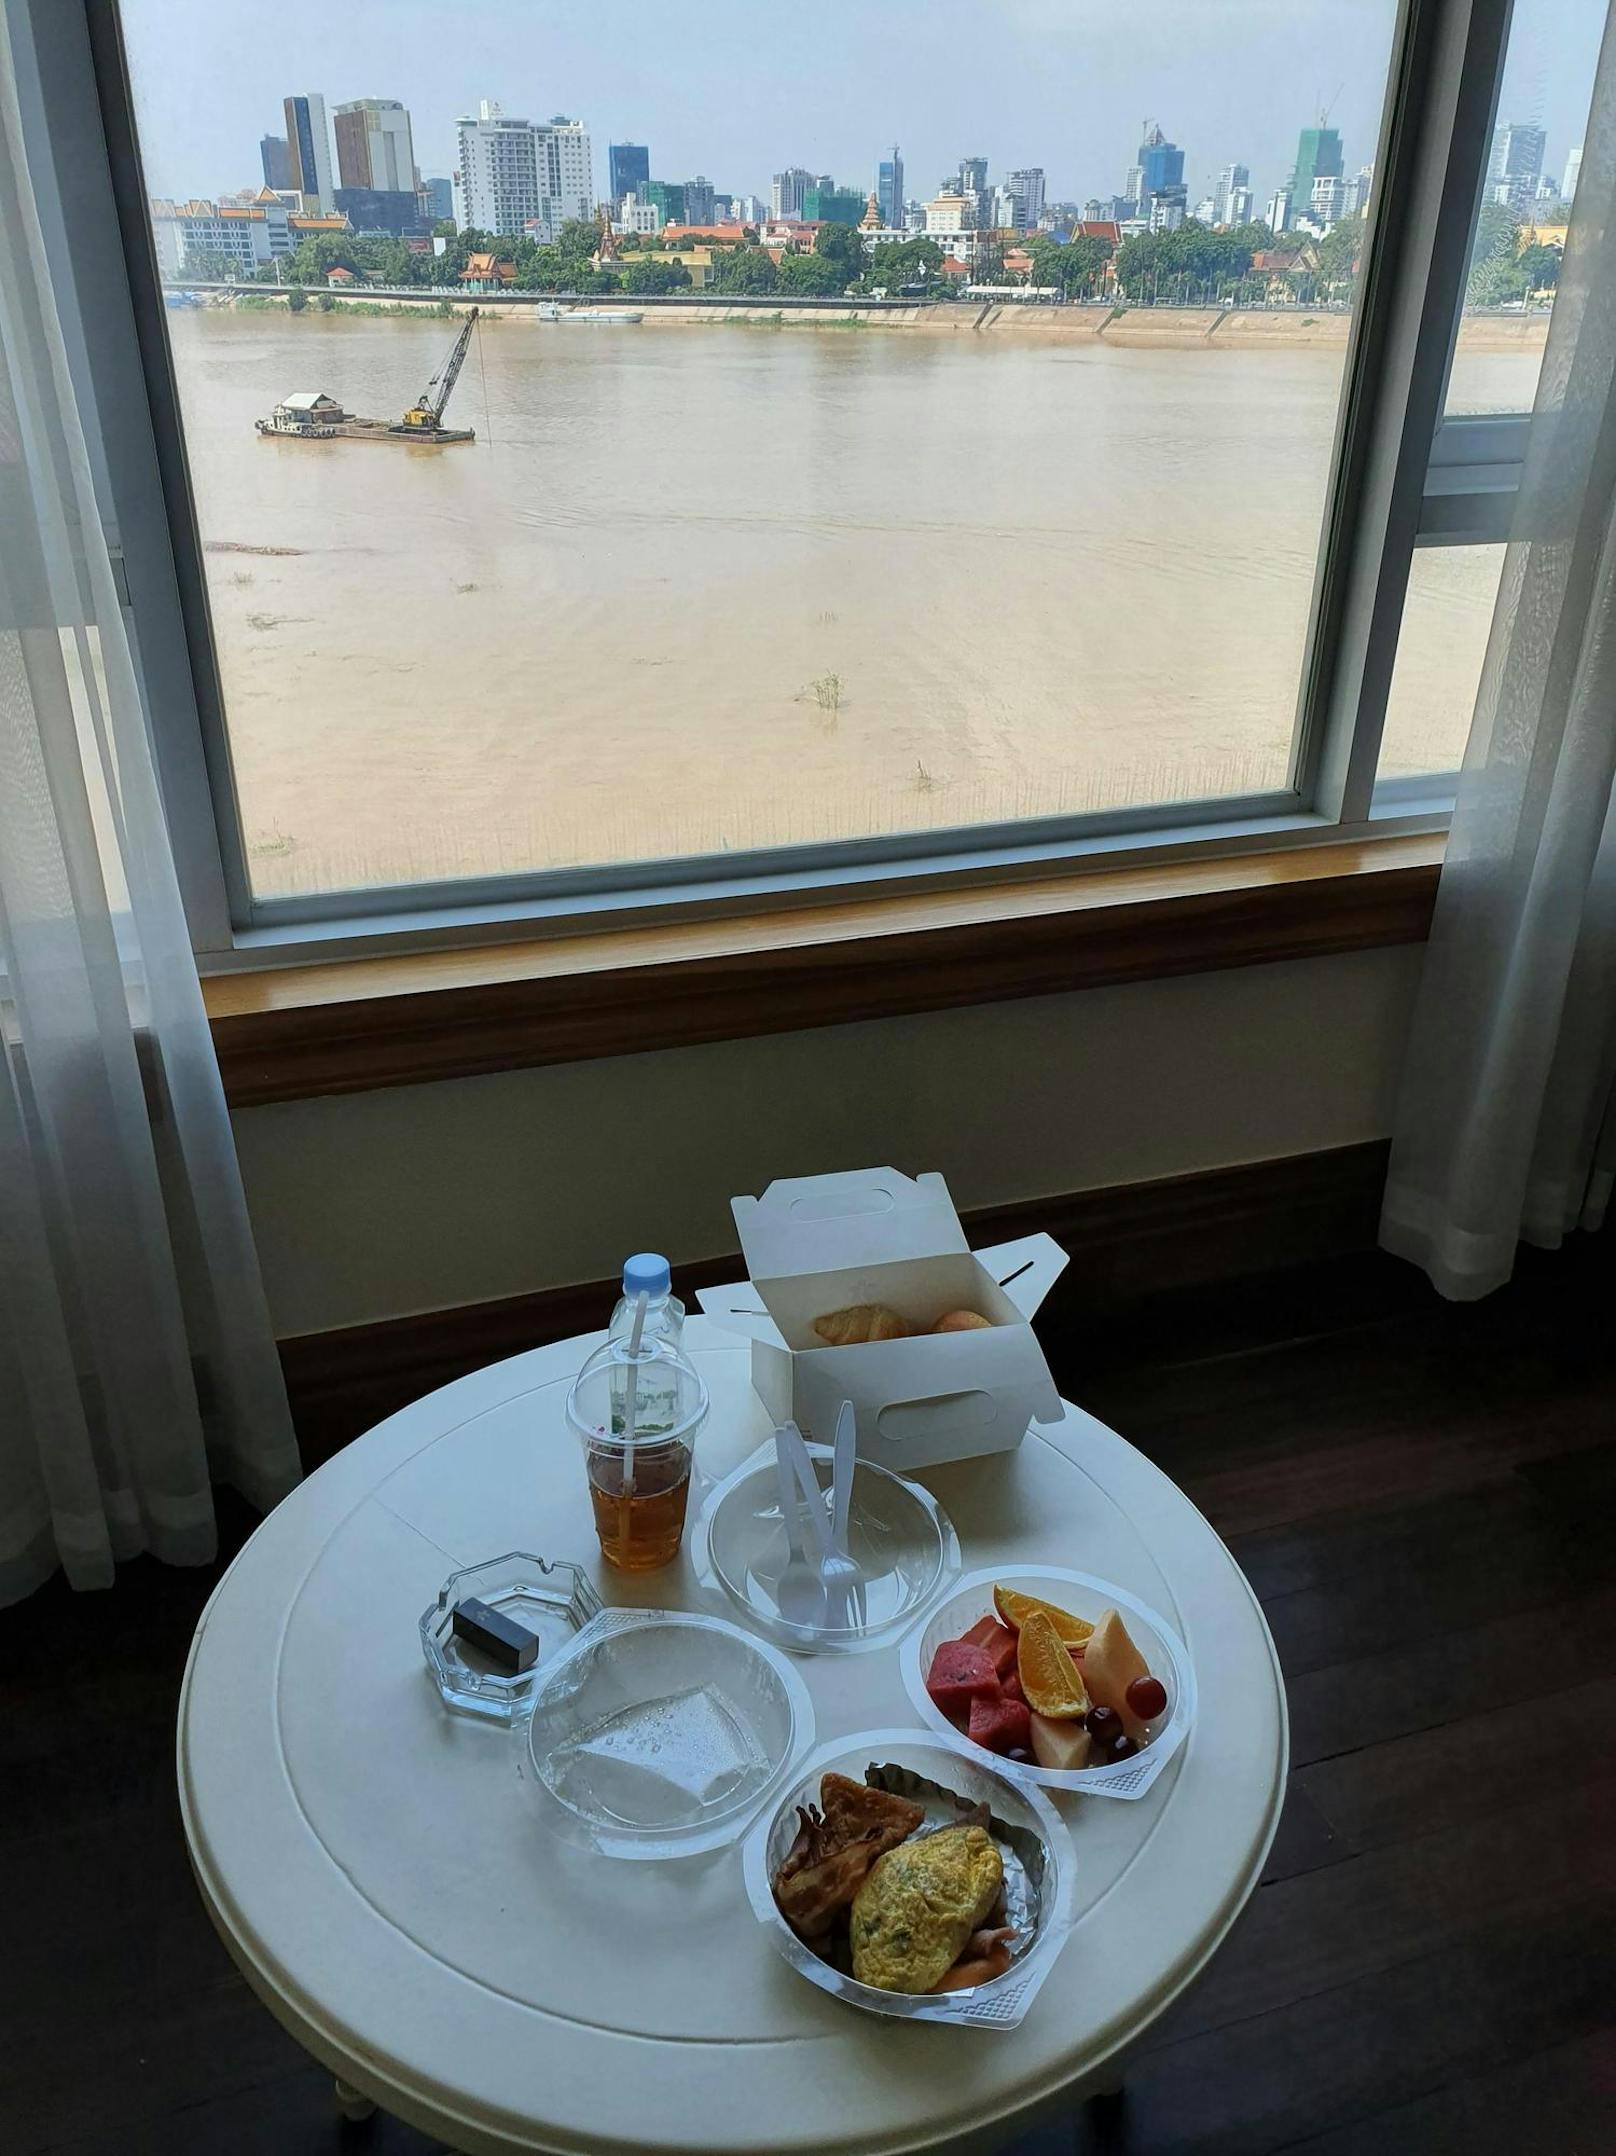 Die Aussicht beim Essen ist nicht schlecht: Er blickt vom Zimmer aus auf den Tonle Sap Fluss und die dahinter aufragende Skyline von Phnom Penh.